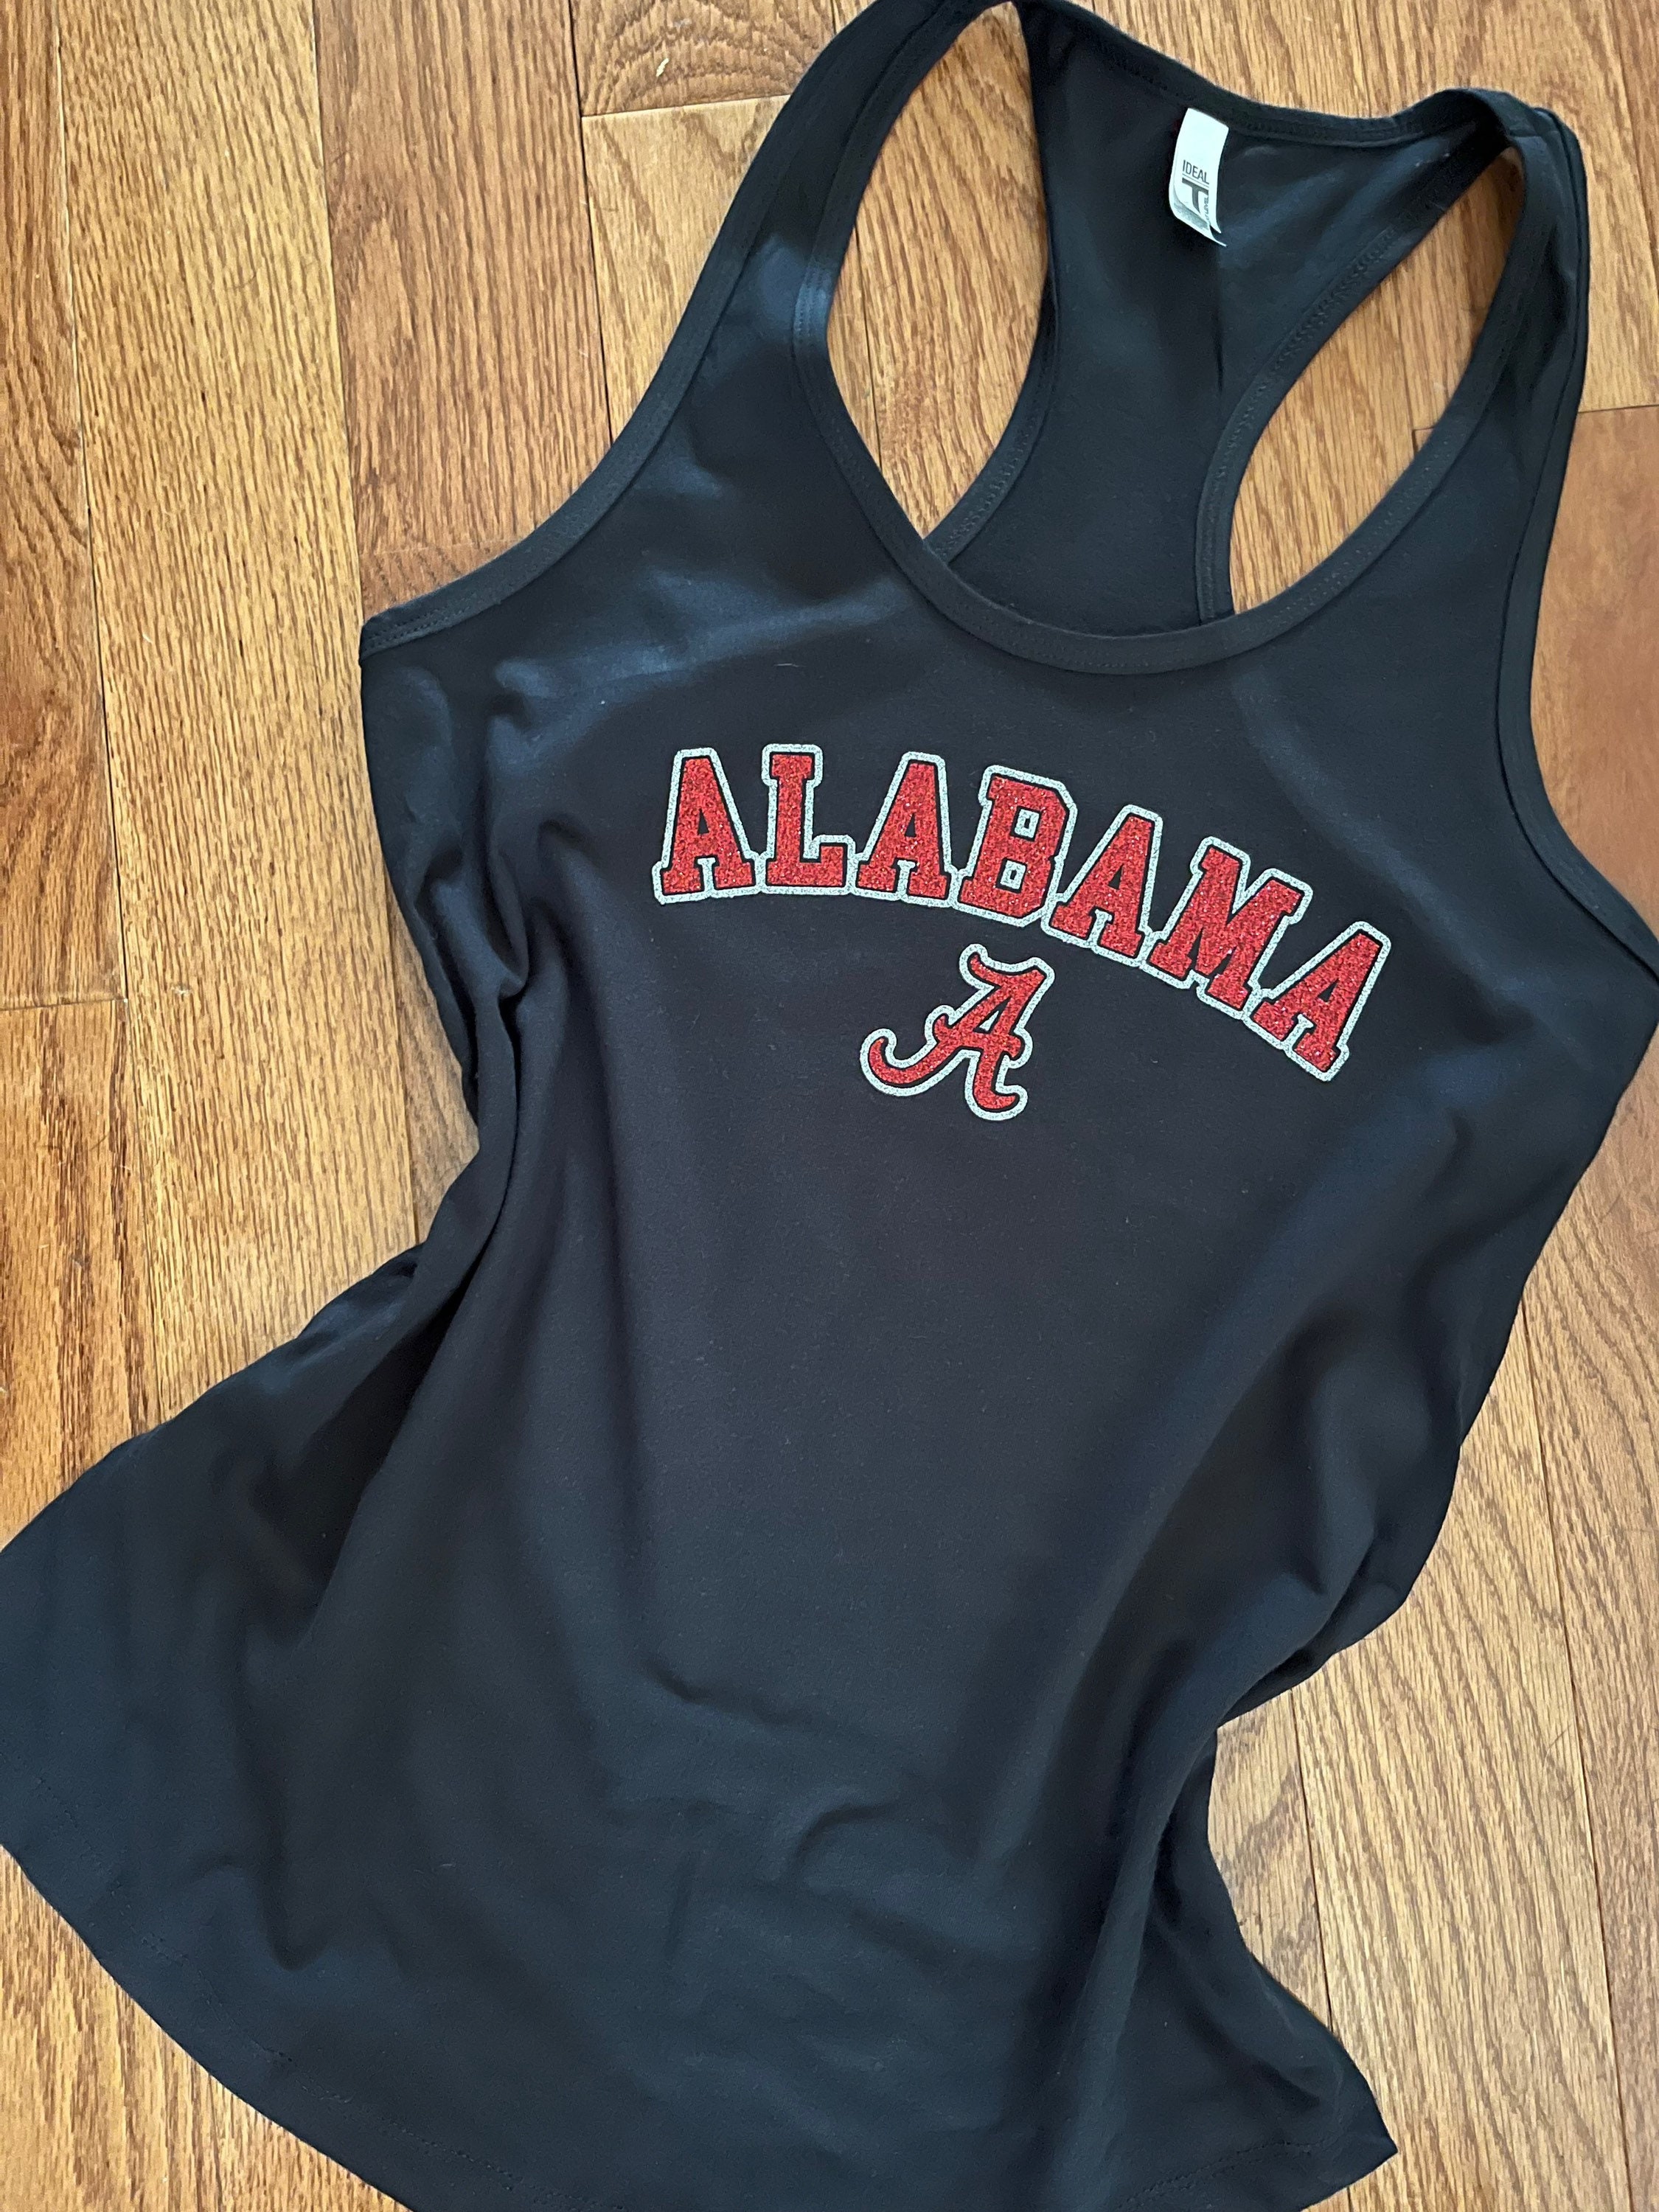 Vintage Nike Team Alabama Tank Top Jersey